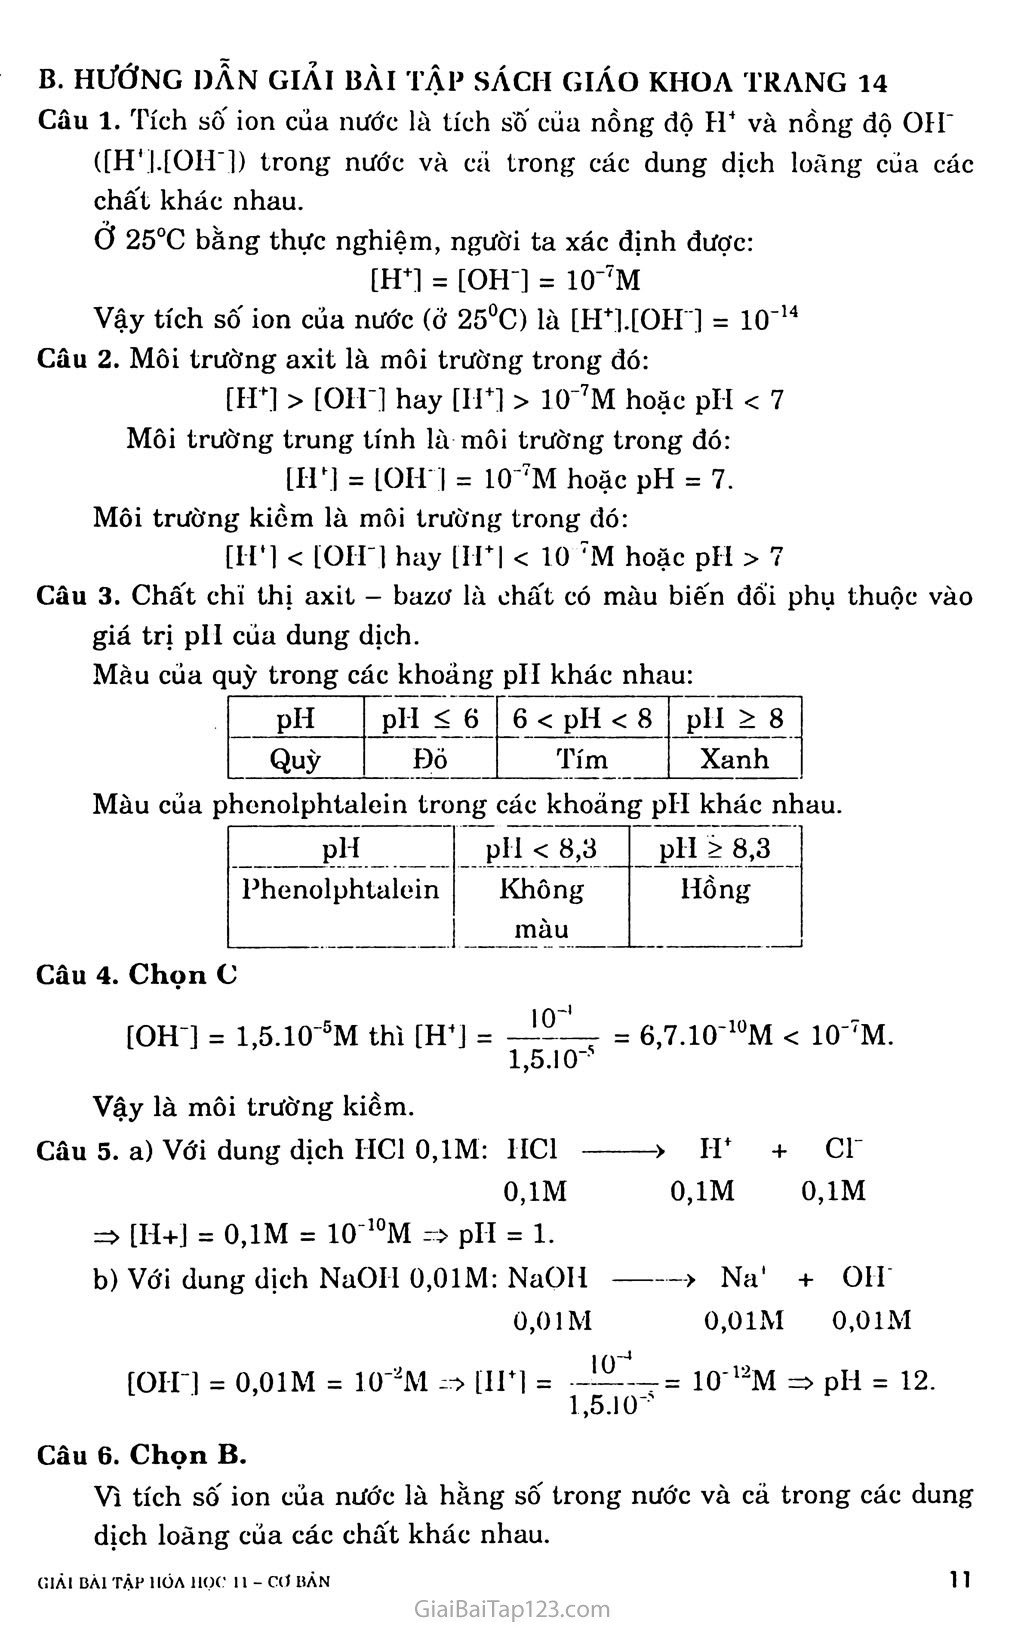 Bài 3: Sự điện ly của nước, pH: Chất chỉ thị aixit bazơ trang 3